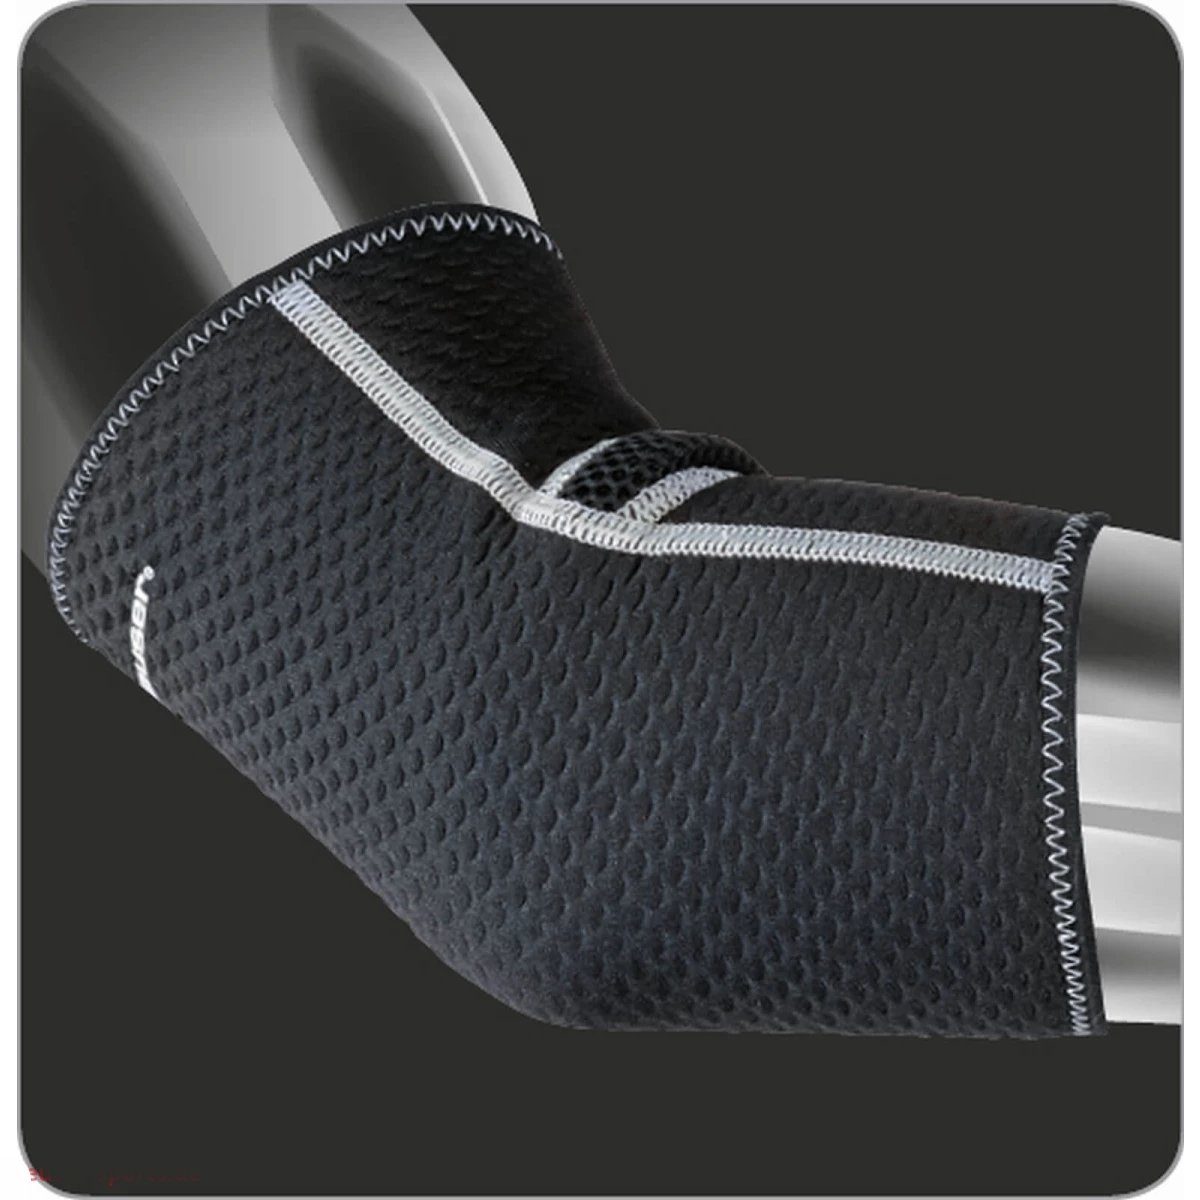 Deuser-Sports Ellenbogenschutz Ellbogenbandage Kompression Neopren ohne Polster, S - XL, Anatomische Form, stützt und schützt